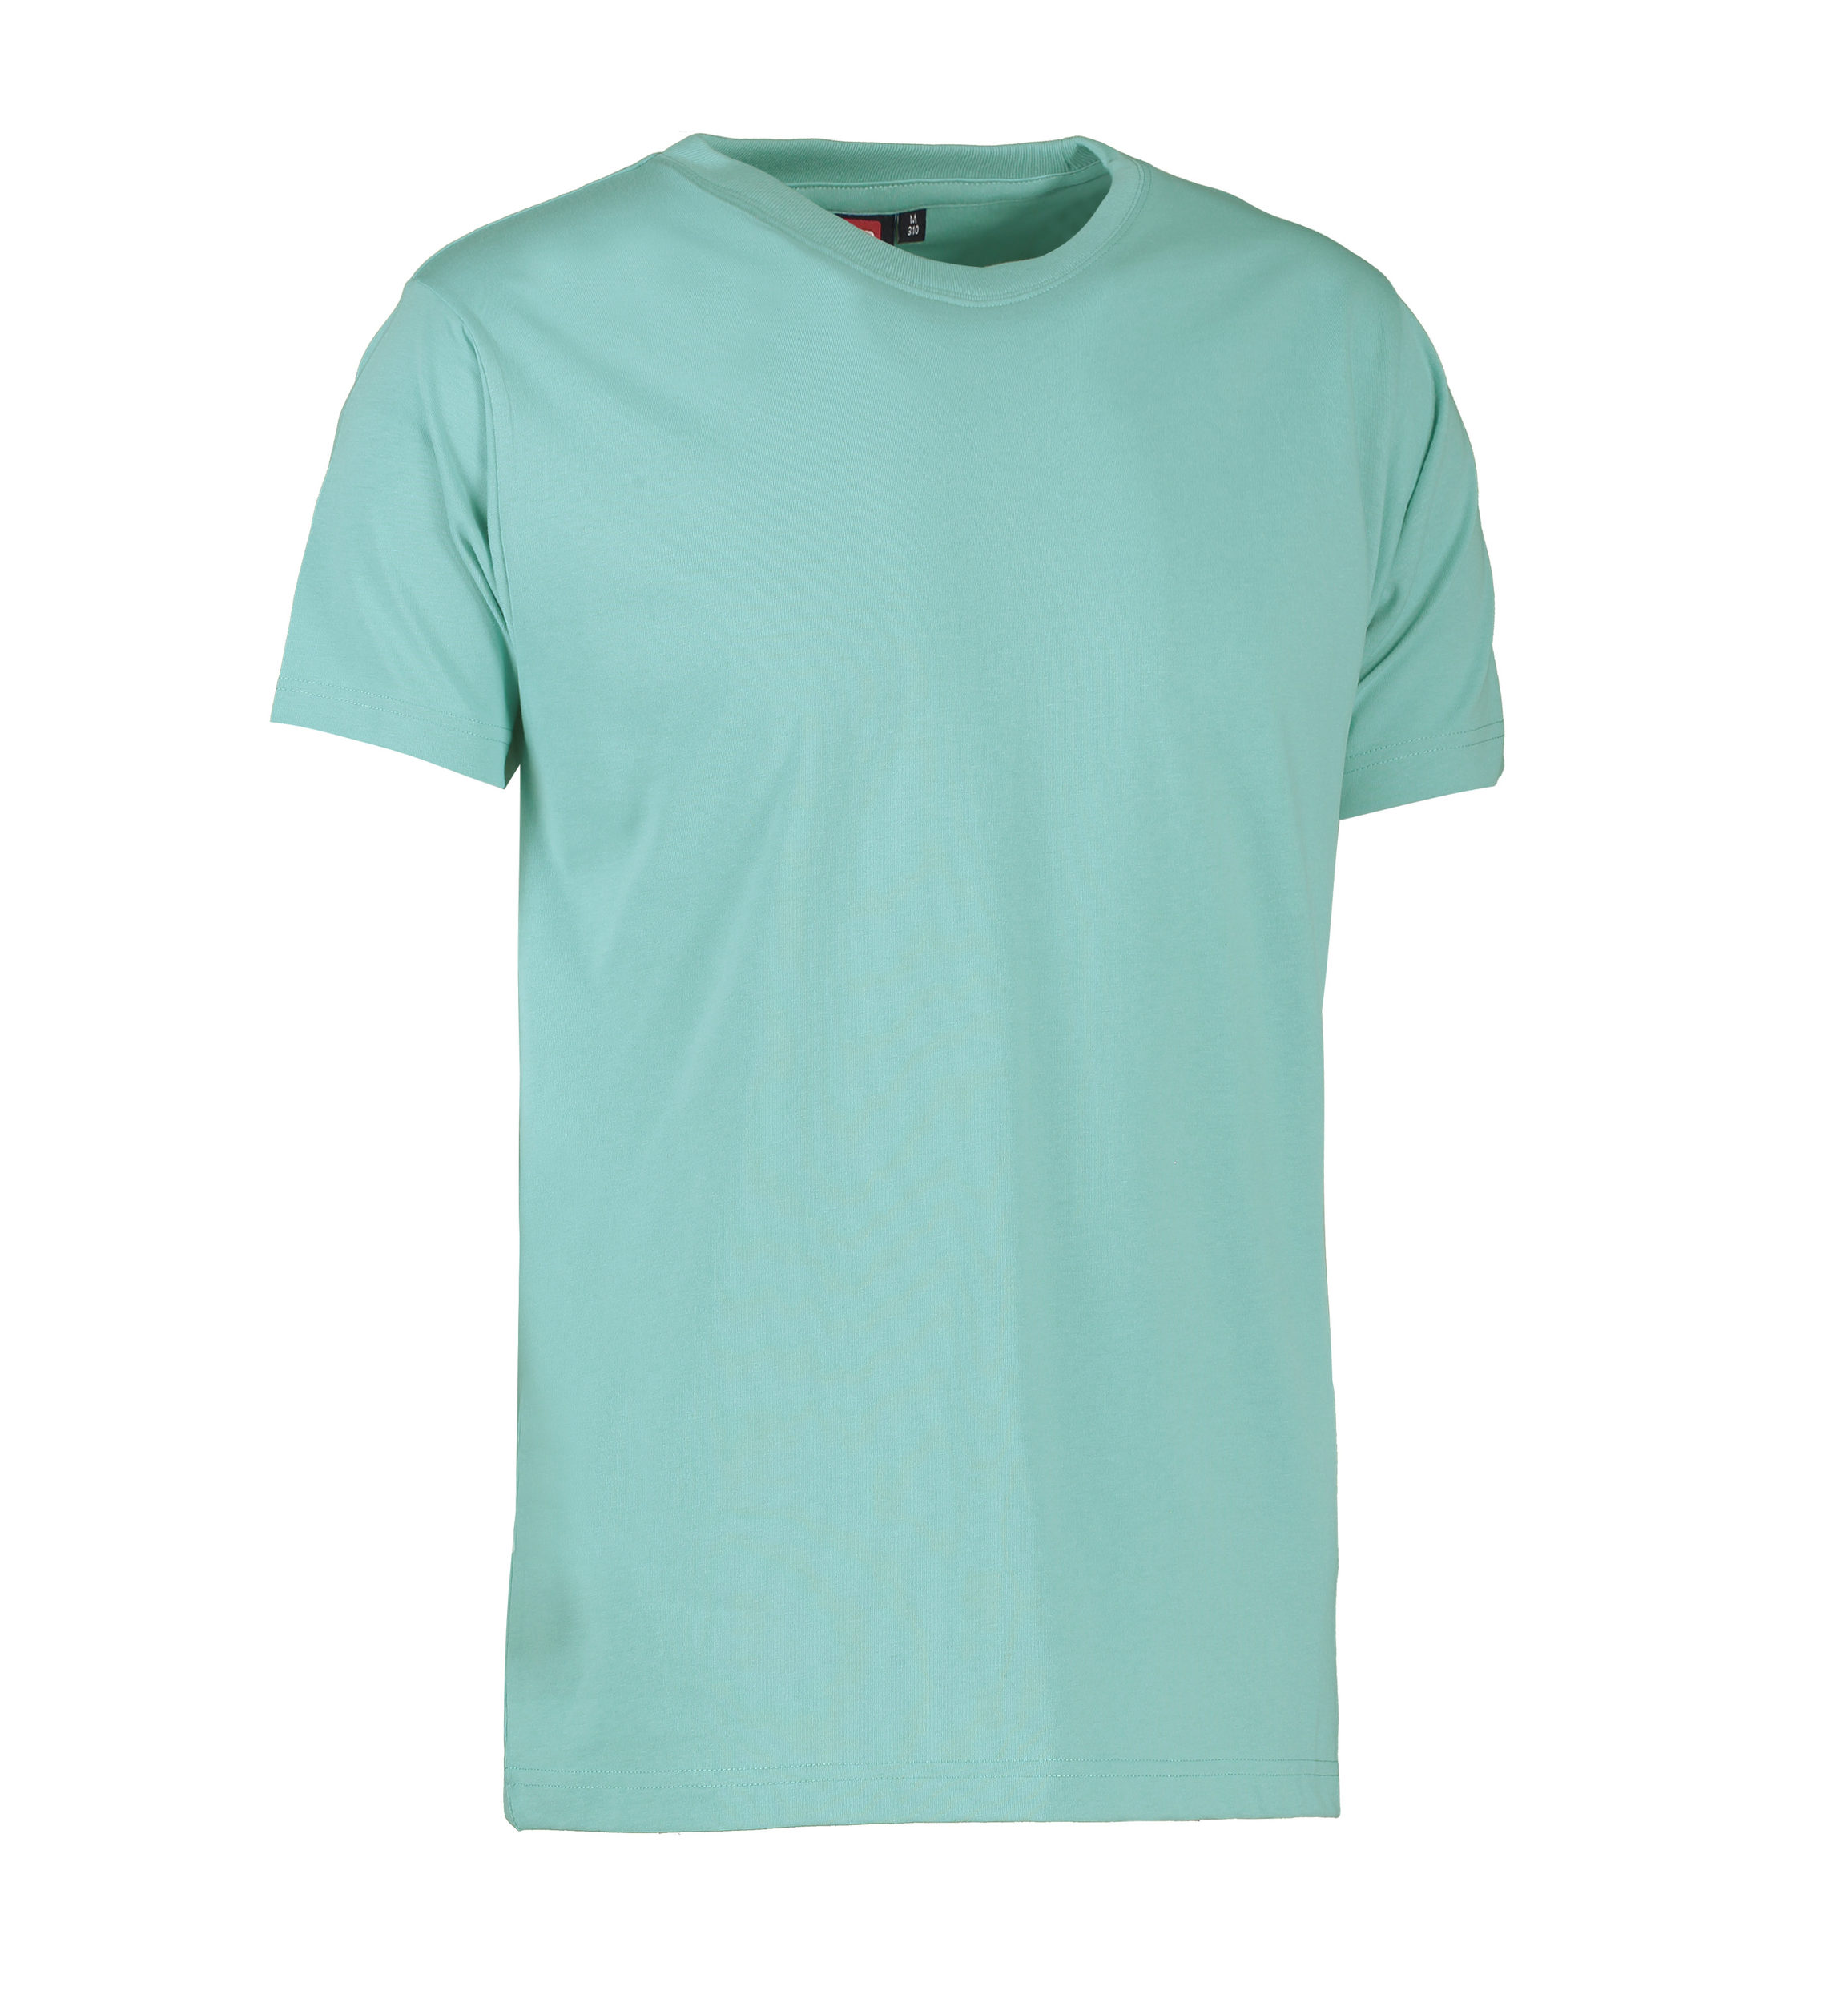 Billede af Slidstærk t-shirt i lys grøn til mænd - L hos Sygeplejebutikken.dk